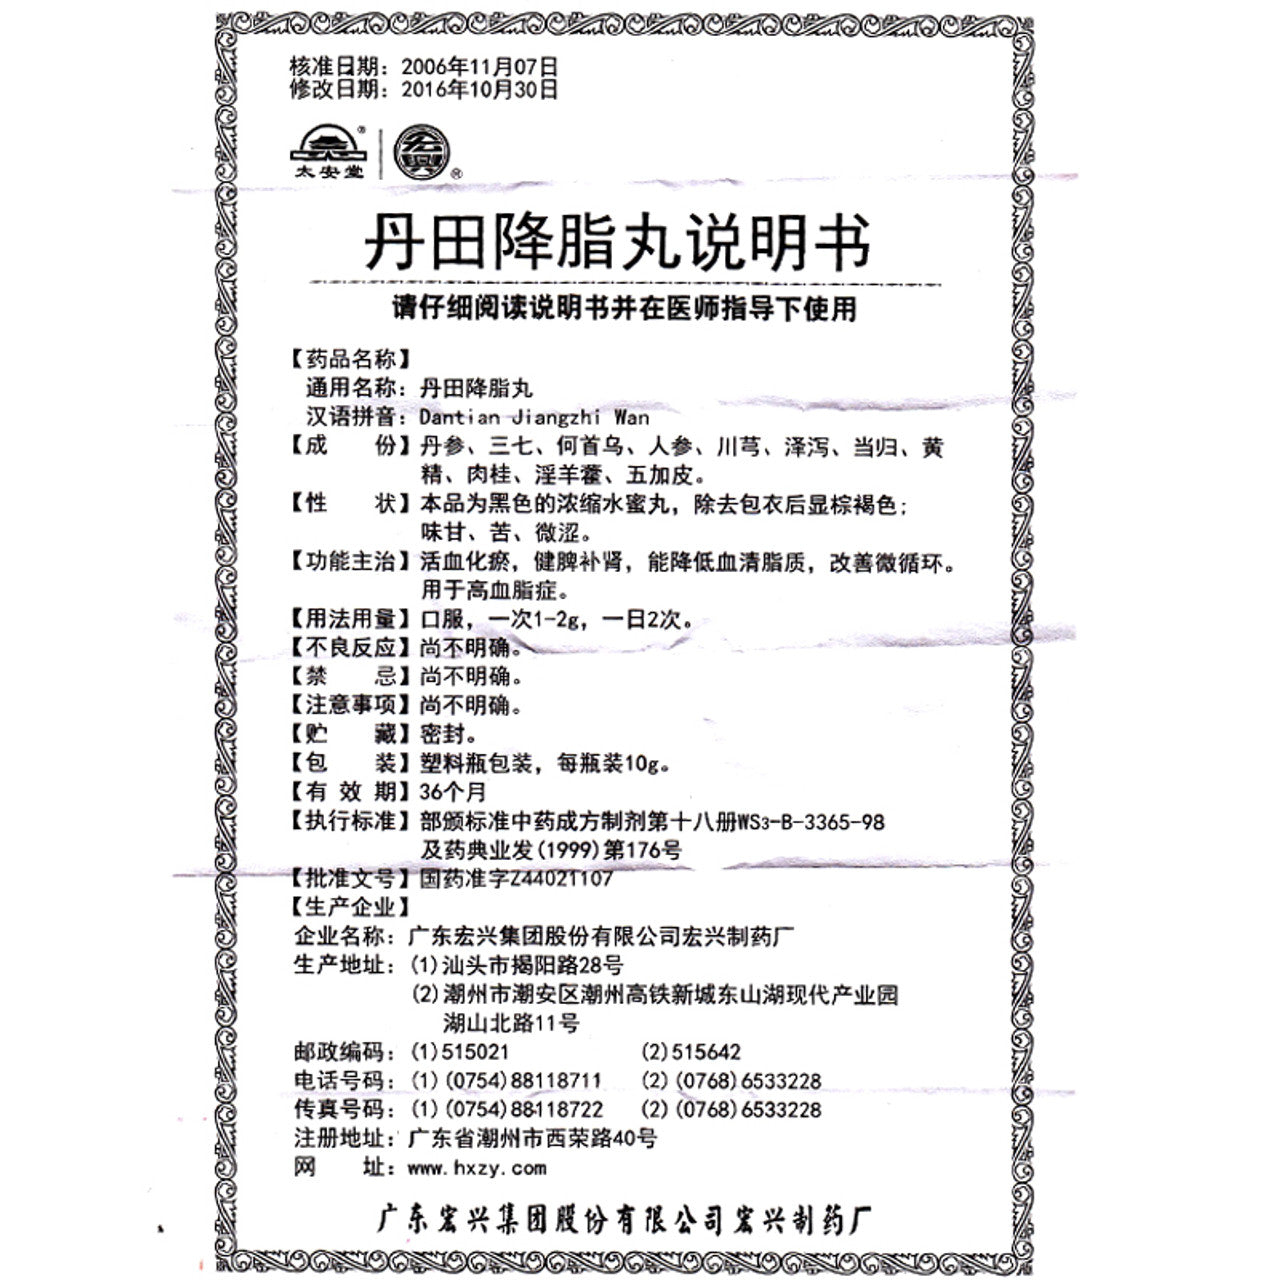 (10g*5 boxes/lot). Dantian Jiangzhi Wan or Dantian Jiangzhi Pills for Hyperlipidemia. Dan Tian Jiang Zhi Wan